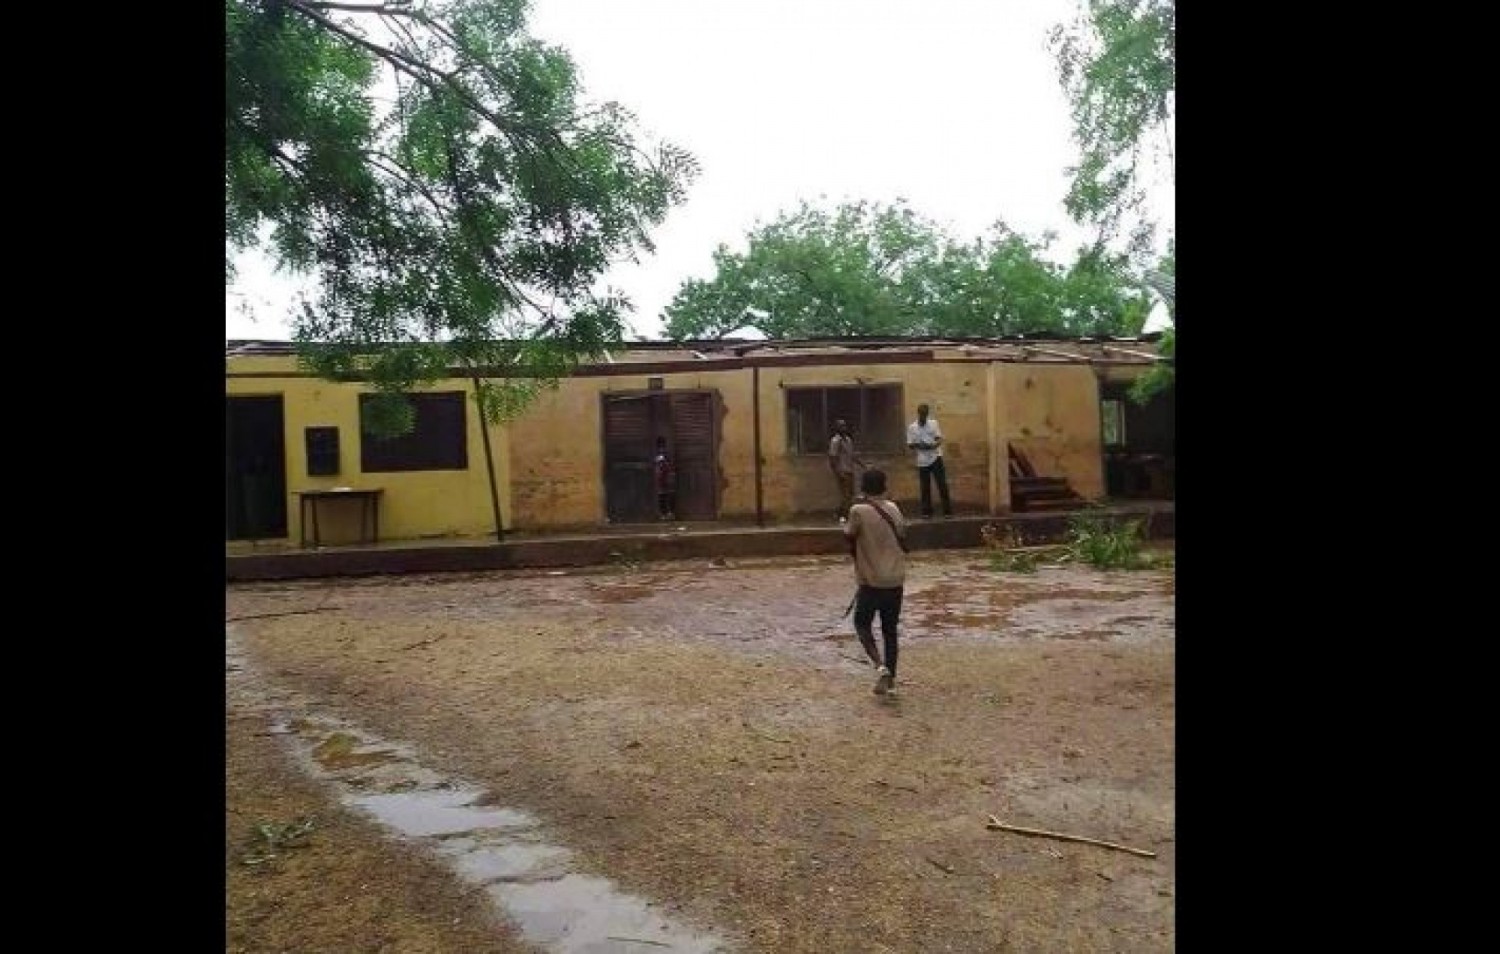 Côte d'Ivoire : Prikro, une forte pluie fait des dégâts, une école décoiffée et une personne blessée par la toiture